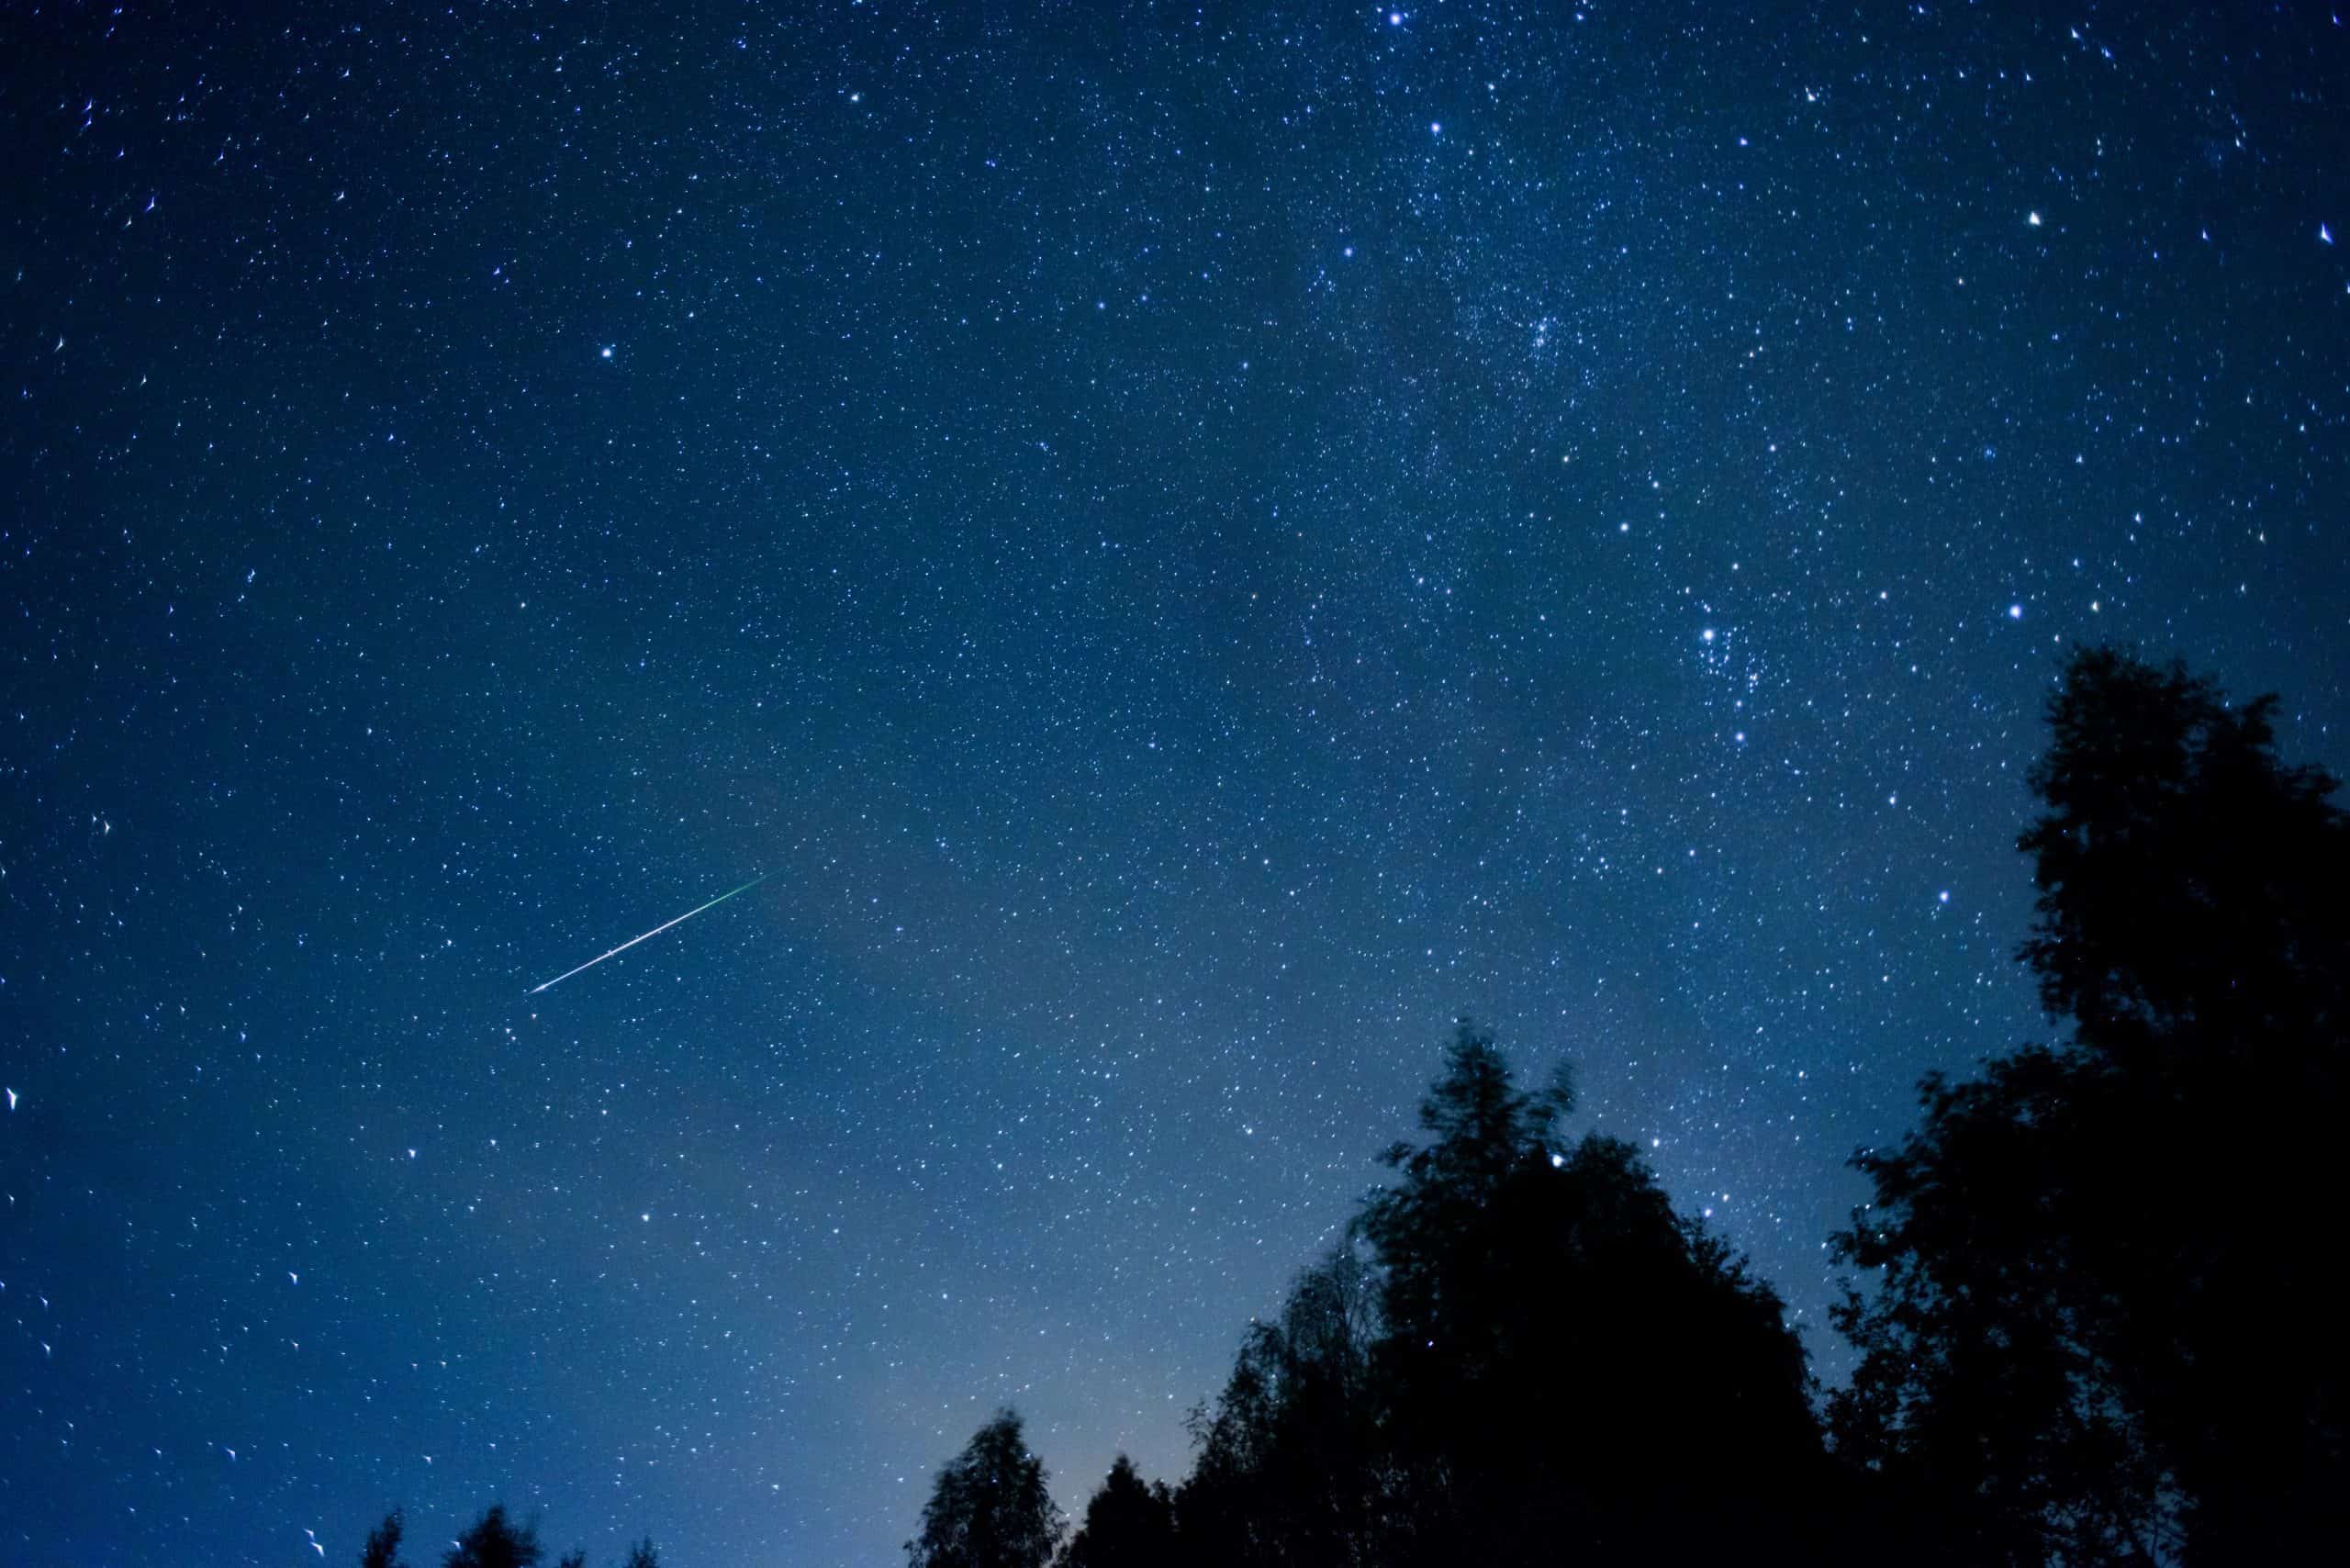 Watch NASA caught fireballs from Perseid meteor shower on camera 